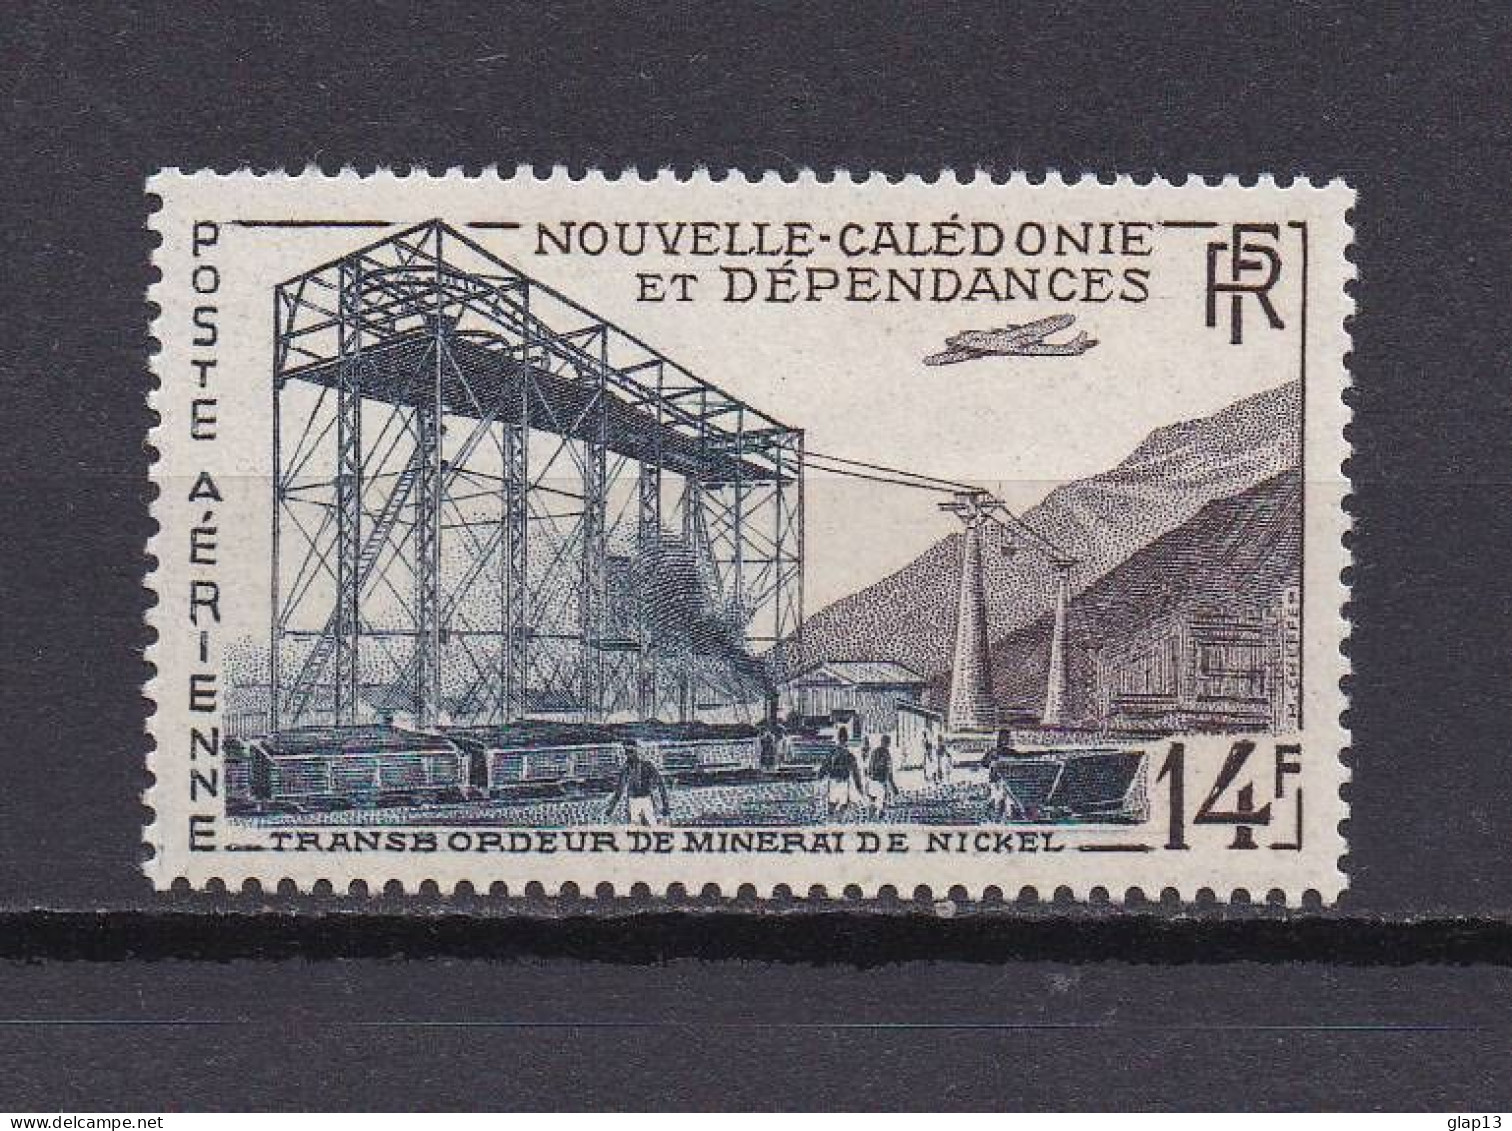 NOUVELLE-CALEDONIE 1955 PA N°66 NEUF AVEC CHARNIERE TRANSBORDEUR - Ongebruikt